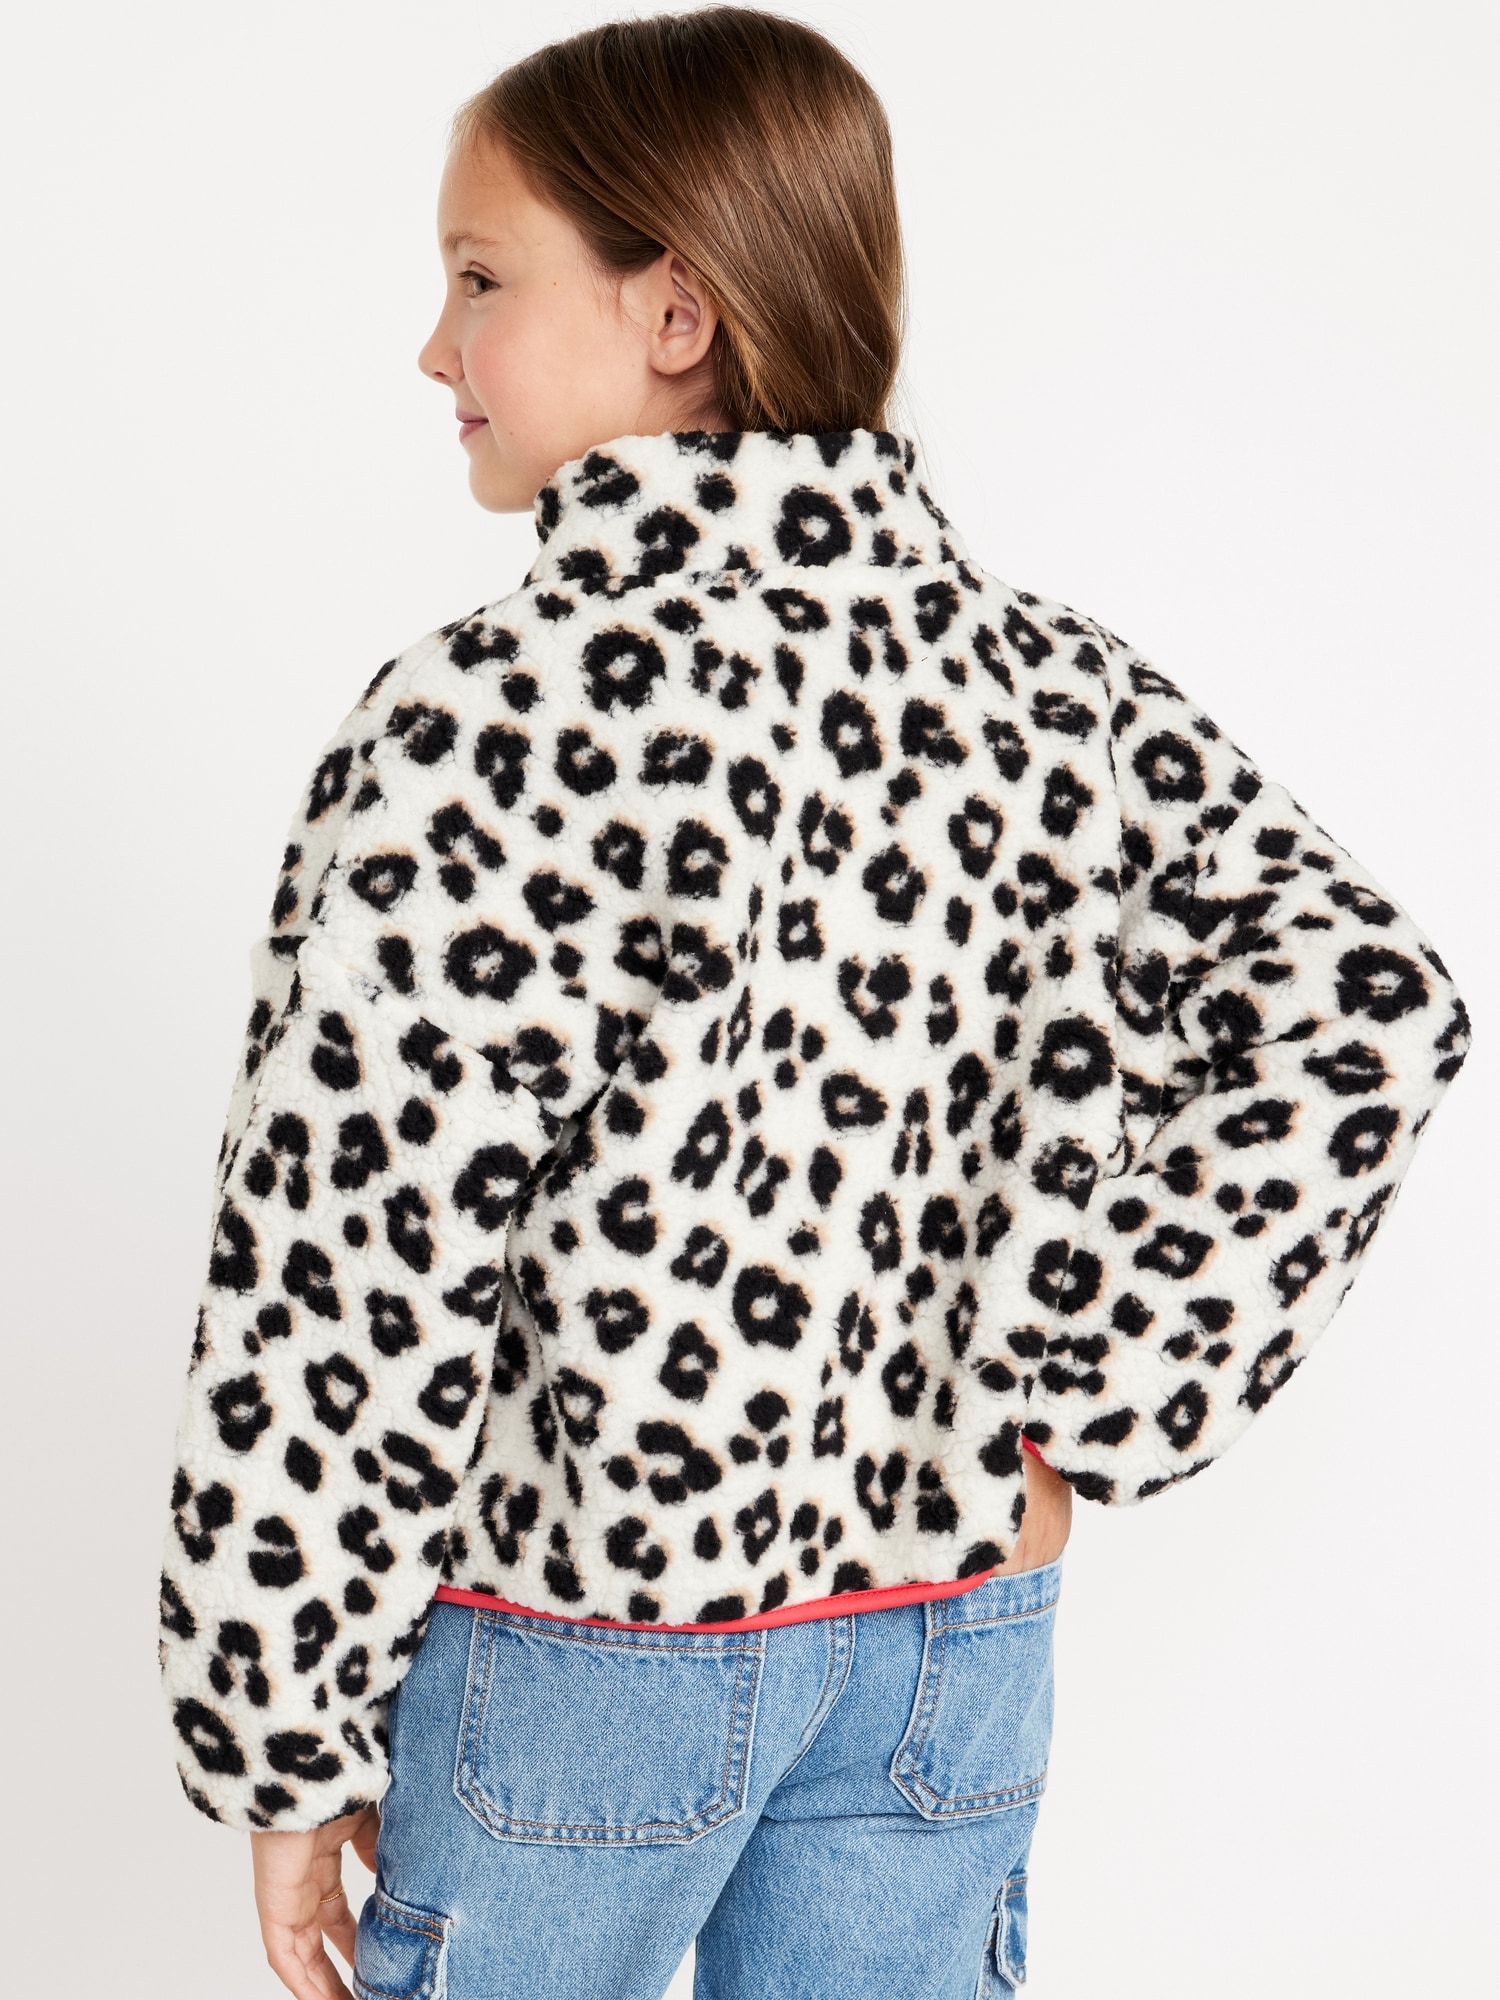 Entyinea Girl's Cozy Sherpa Jacket Cardigan Jacket Warm Outwear